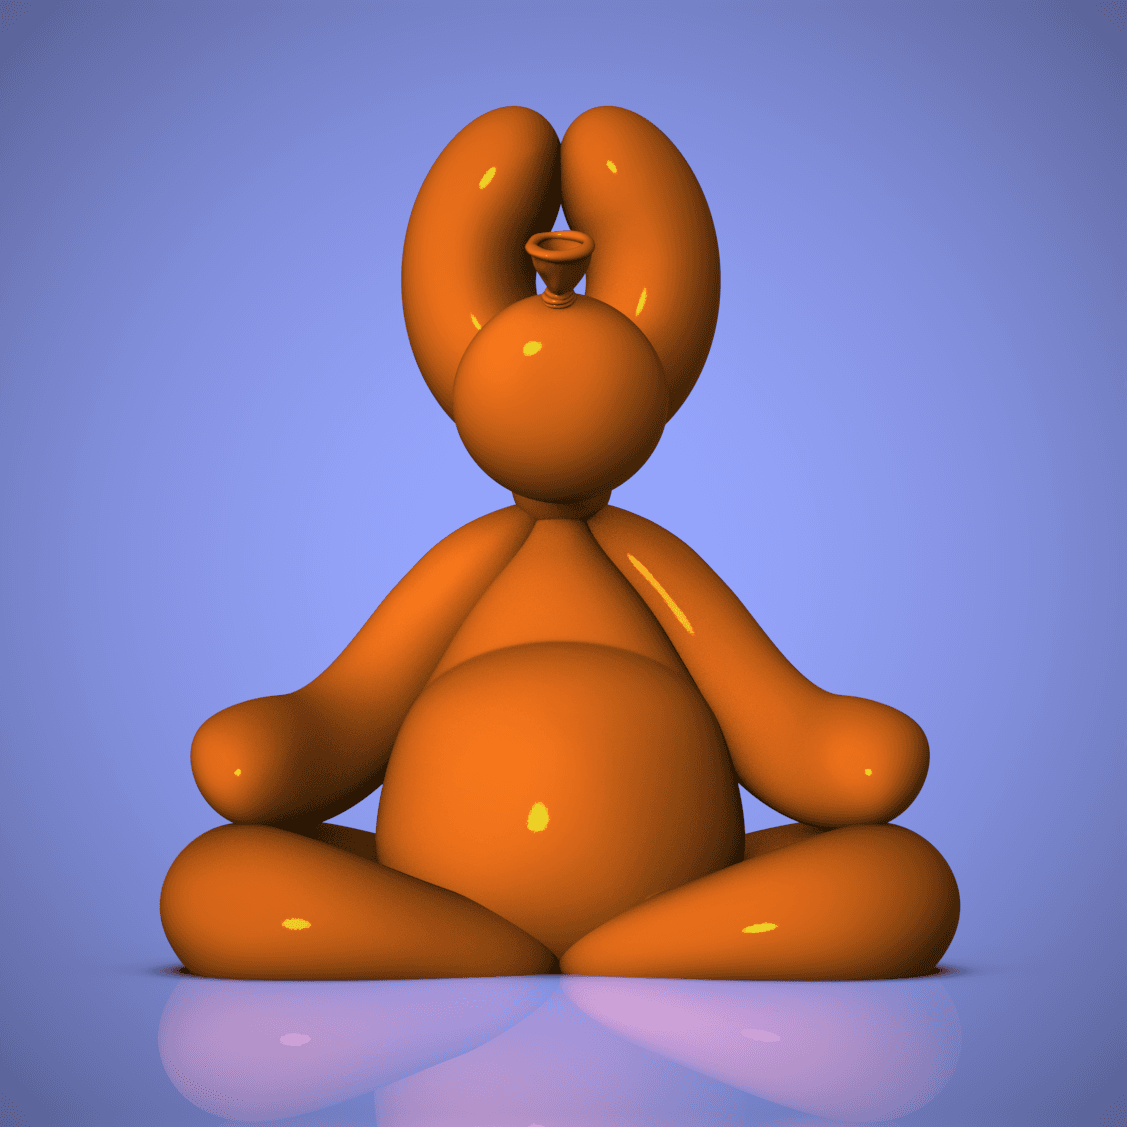 Balloon Buddha Dog 3d model